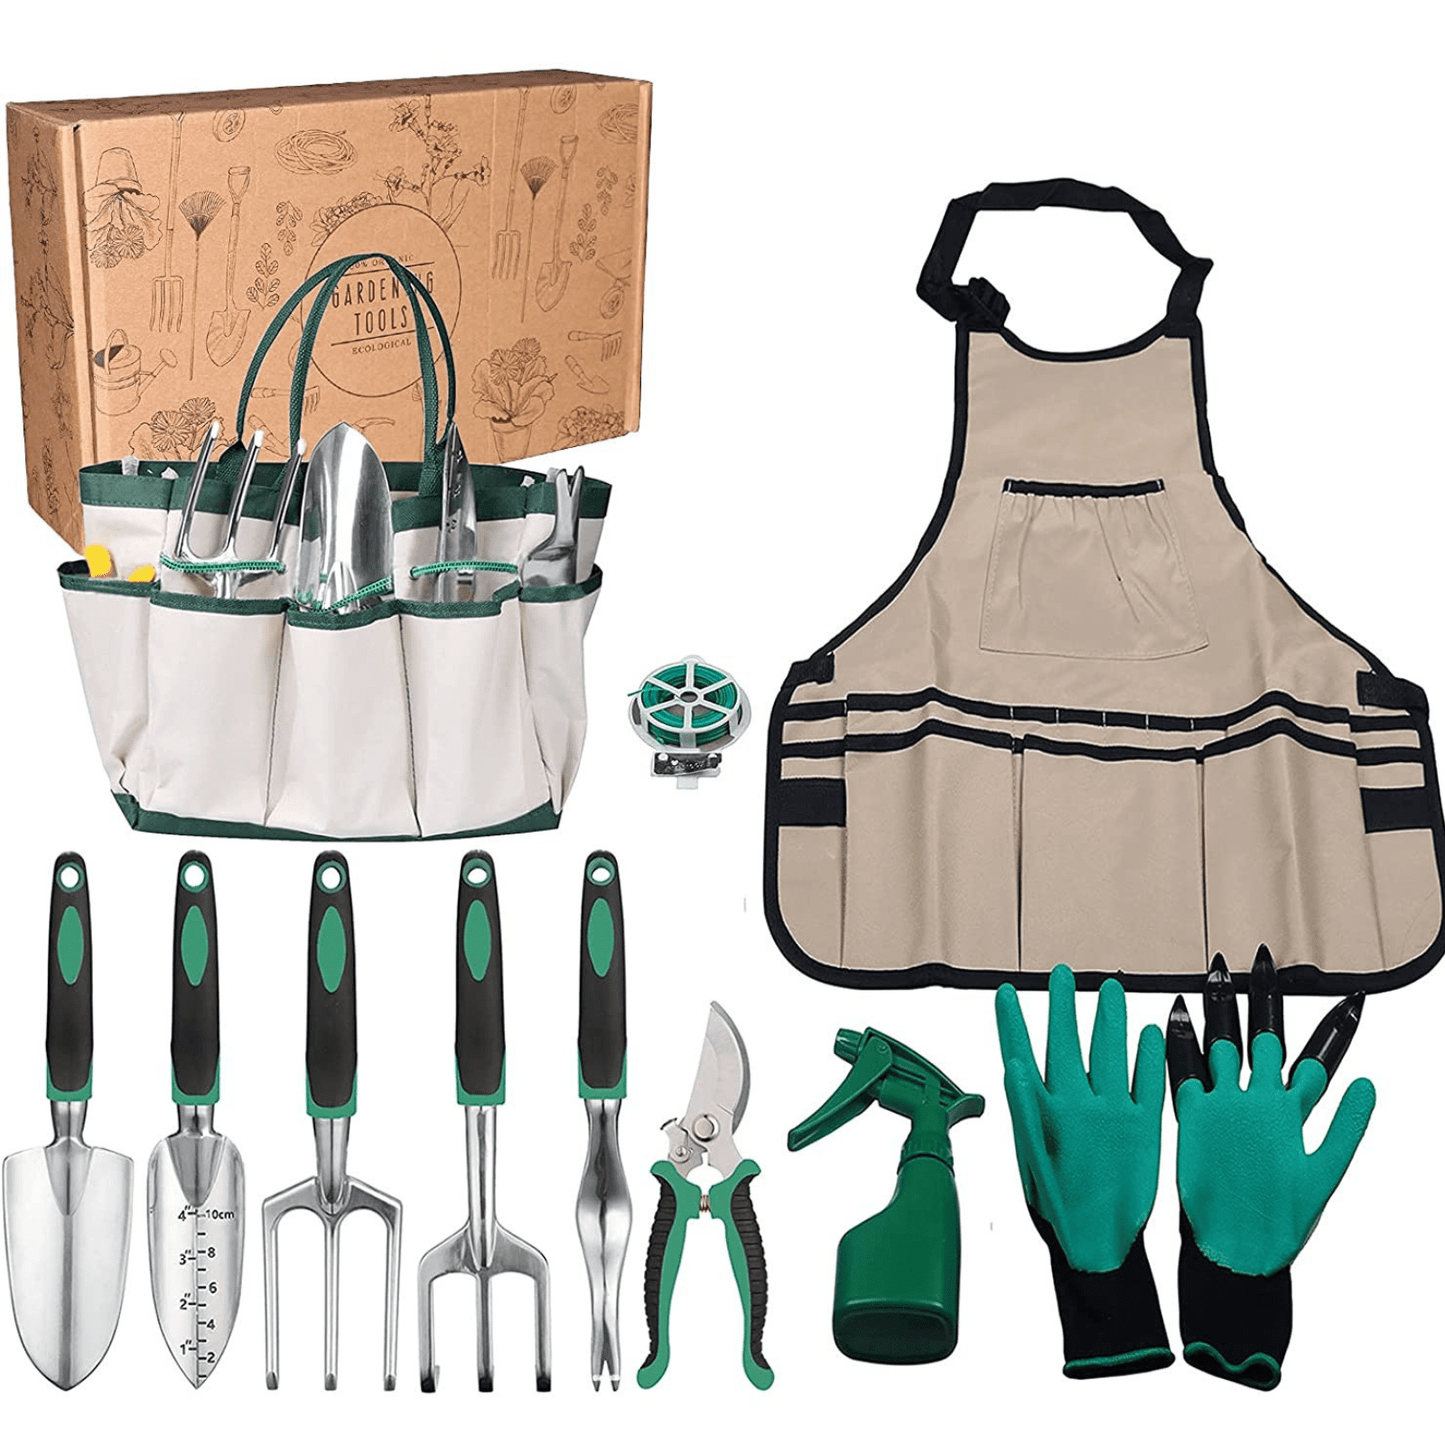 Kit completo de jardinería profesional - 11 herramientas